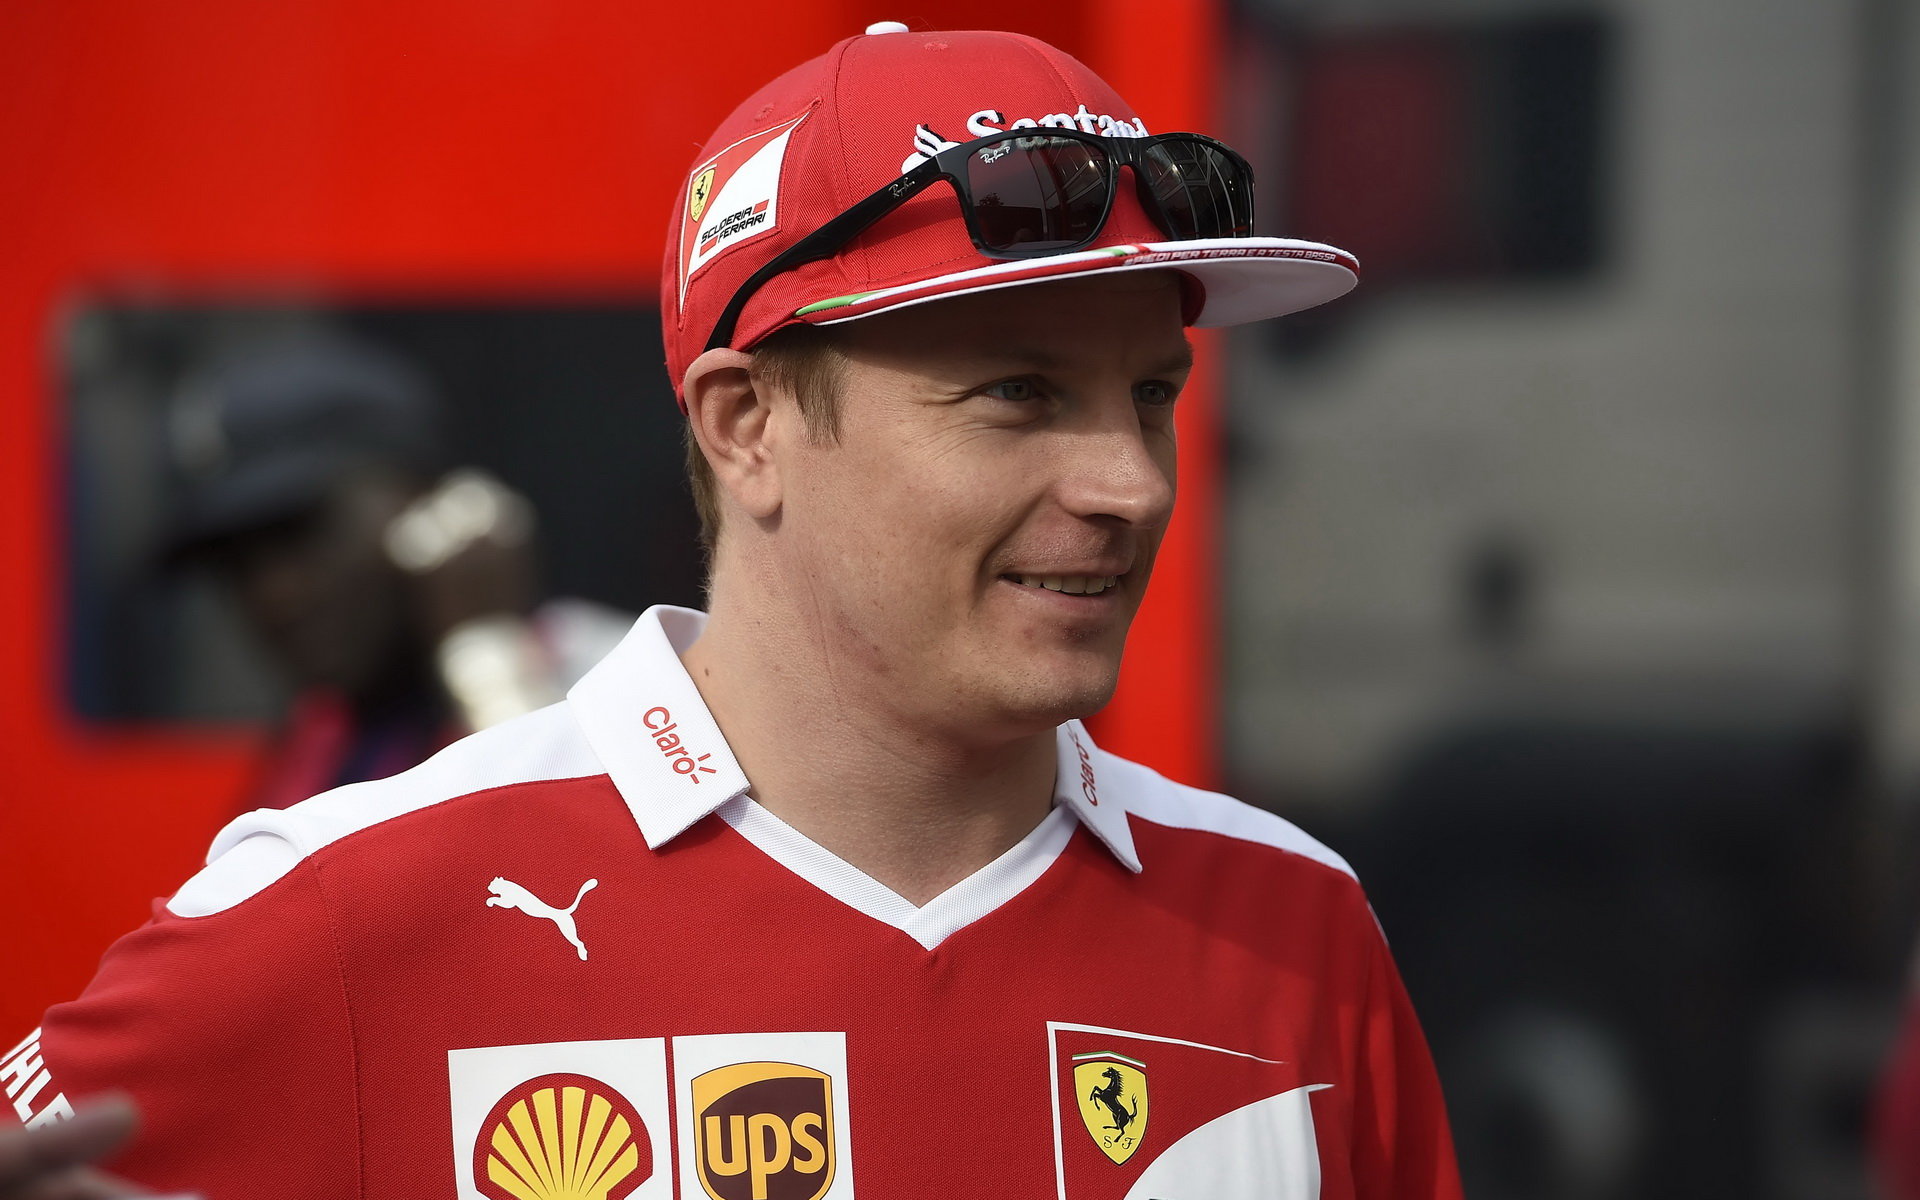 Kimi je před Singapurem, kde Ferrari loni vyhrálo, raději opatrný